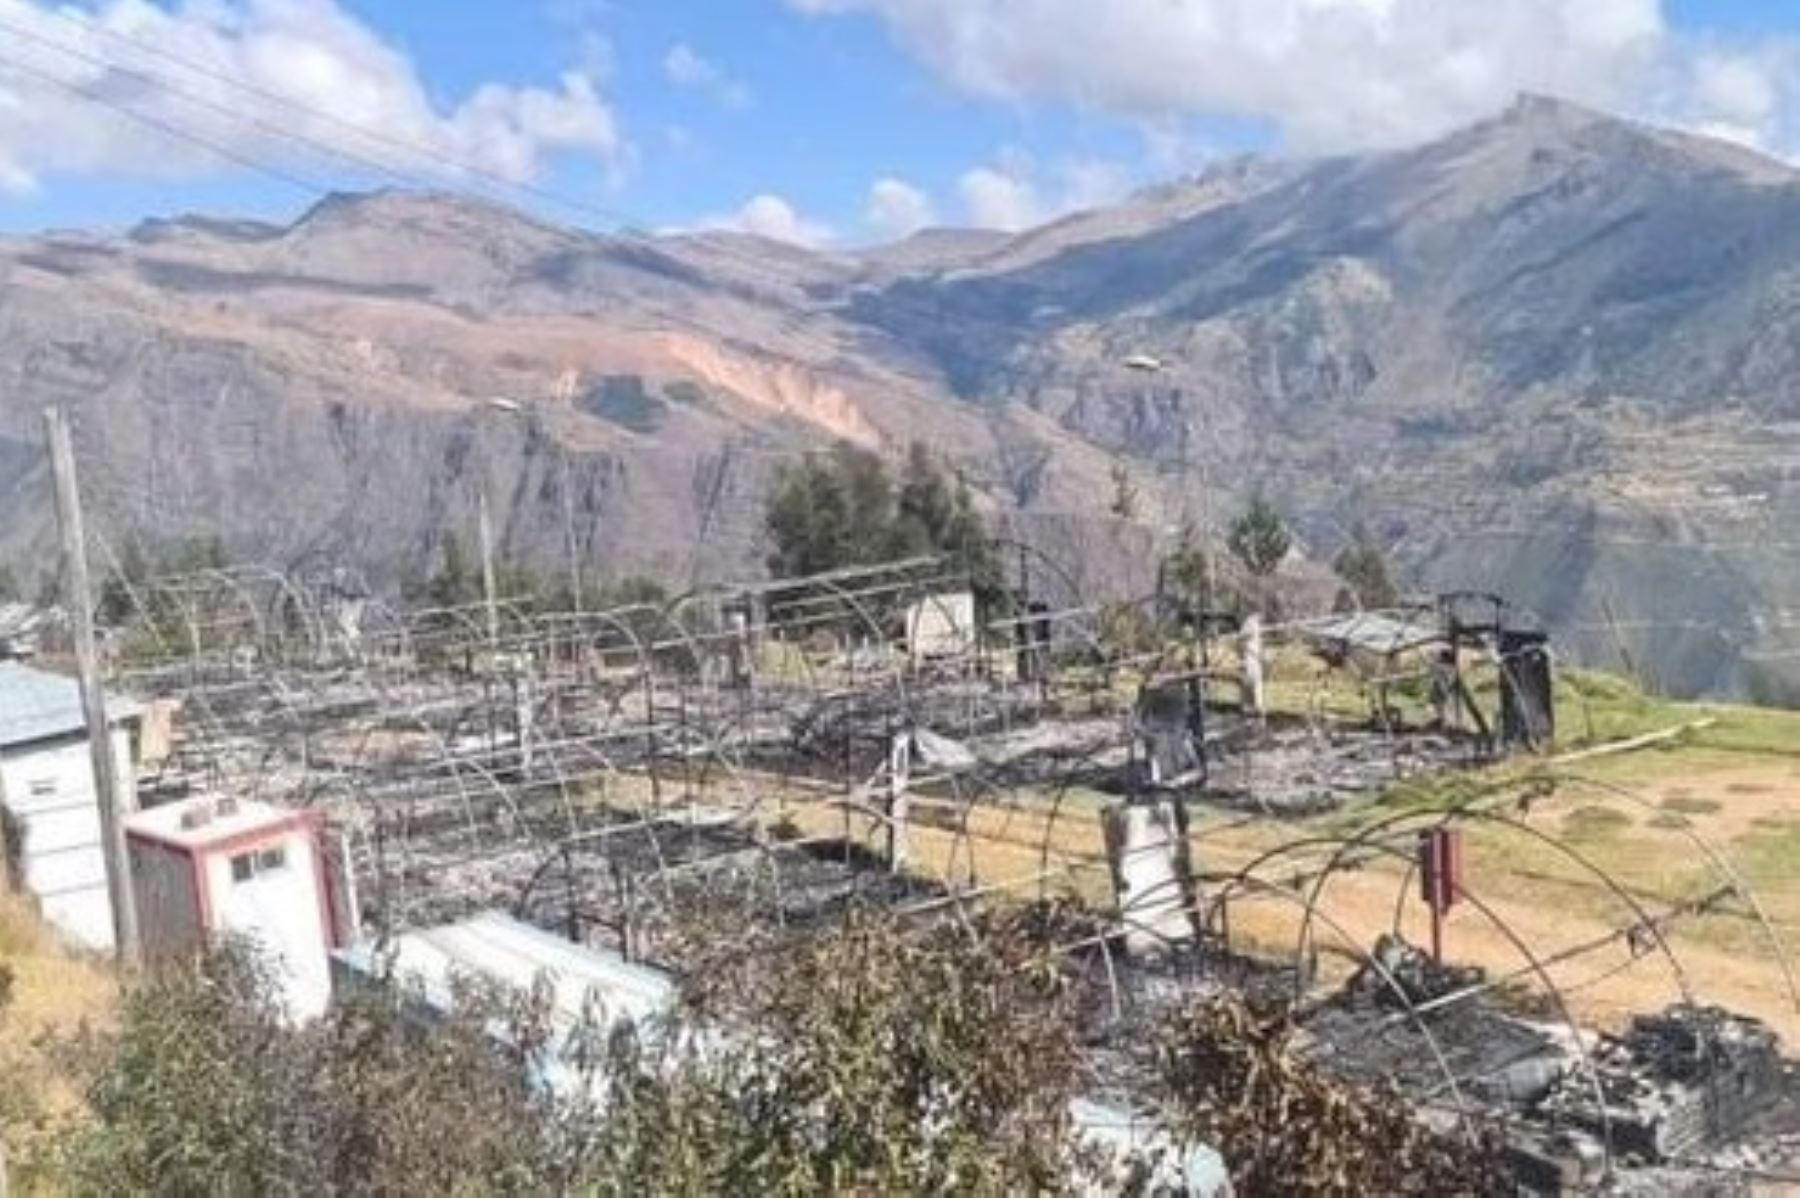 Vista de los daños al campamento del proyecto minero Los Chancas, de Southern Perú. Foto: Facebook Tapayrihua Aymares Apurimac.